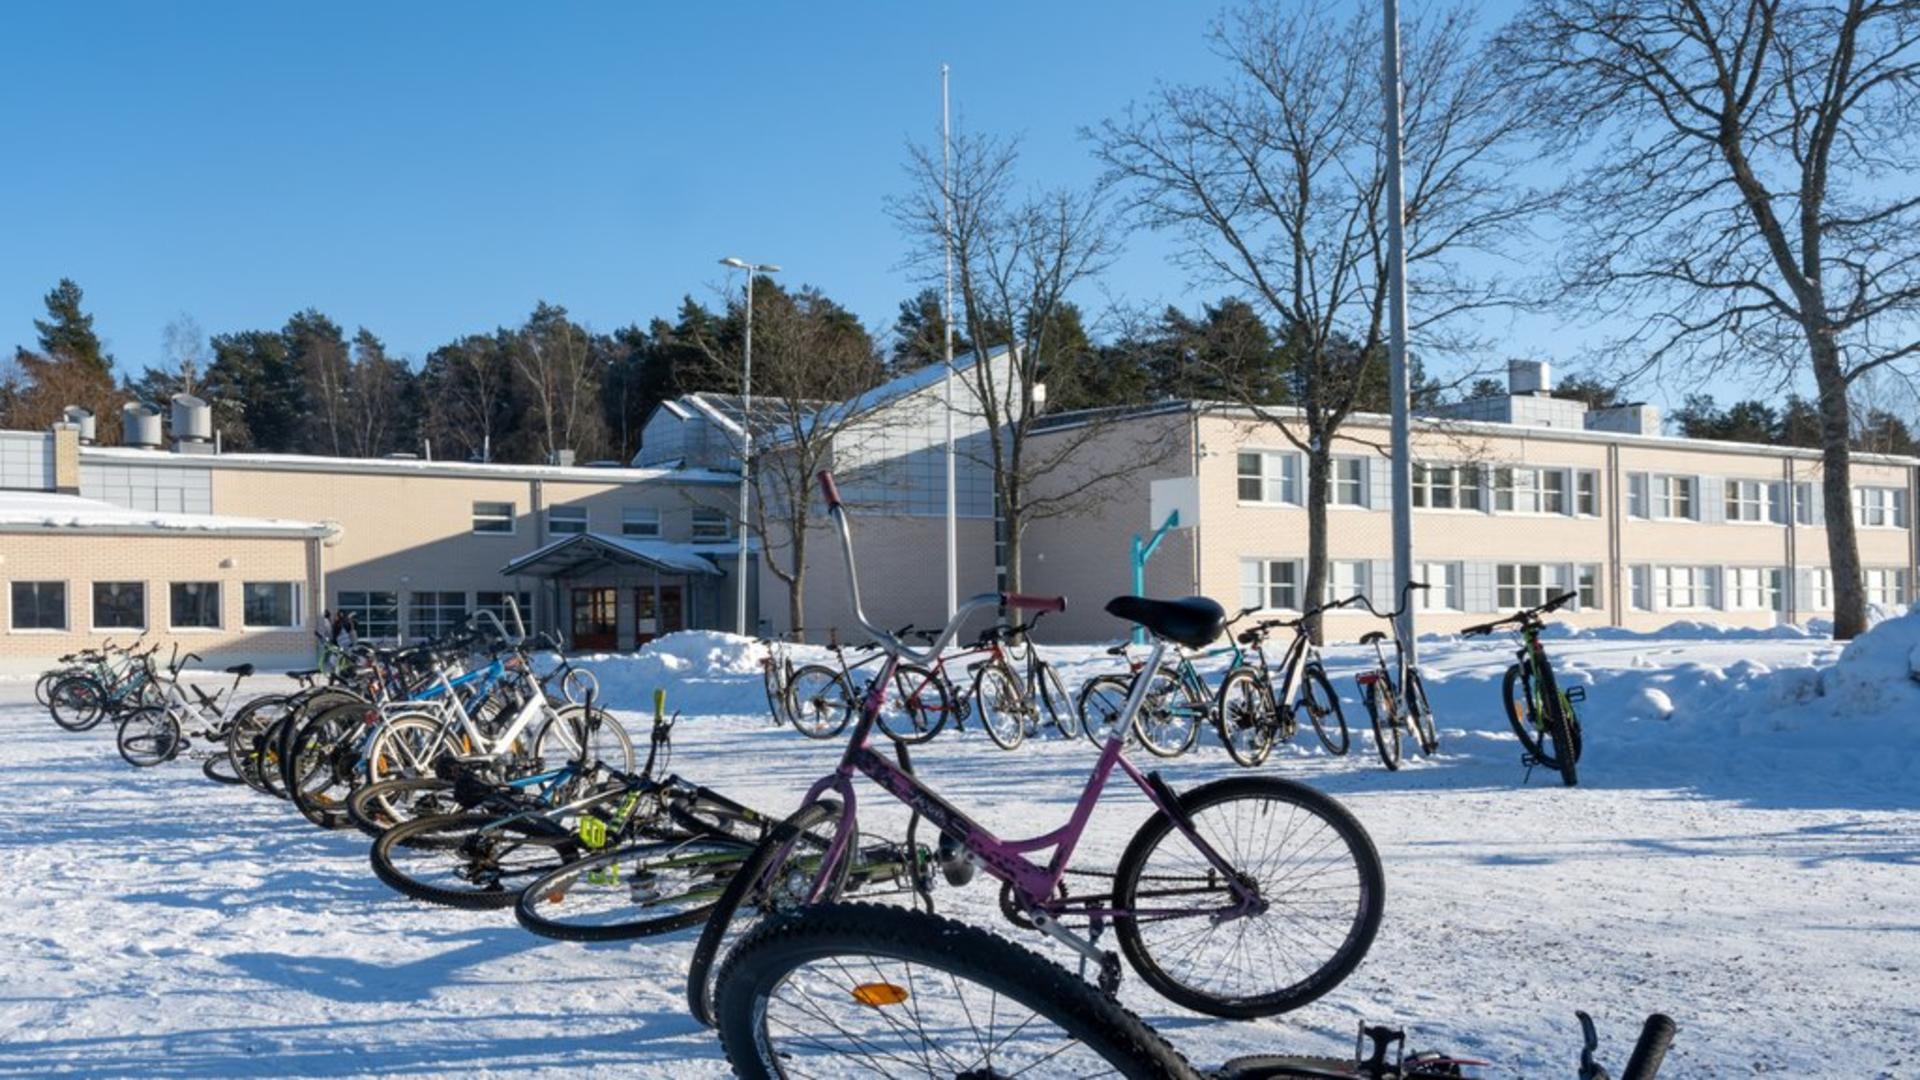 Polkupyöriä Vaisaaren koulun edessä talvisessa maisemassa.